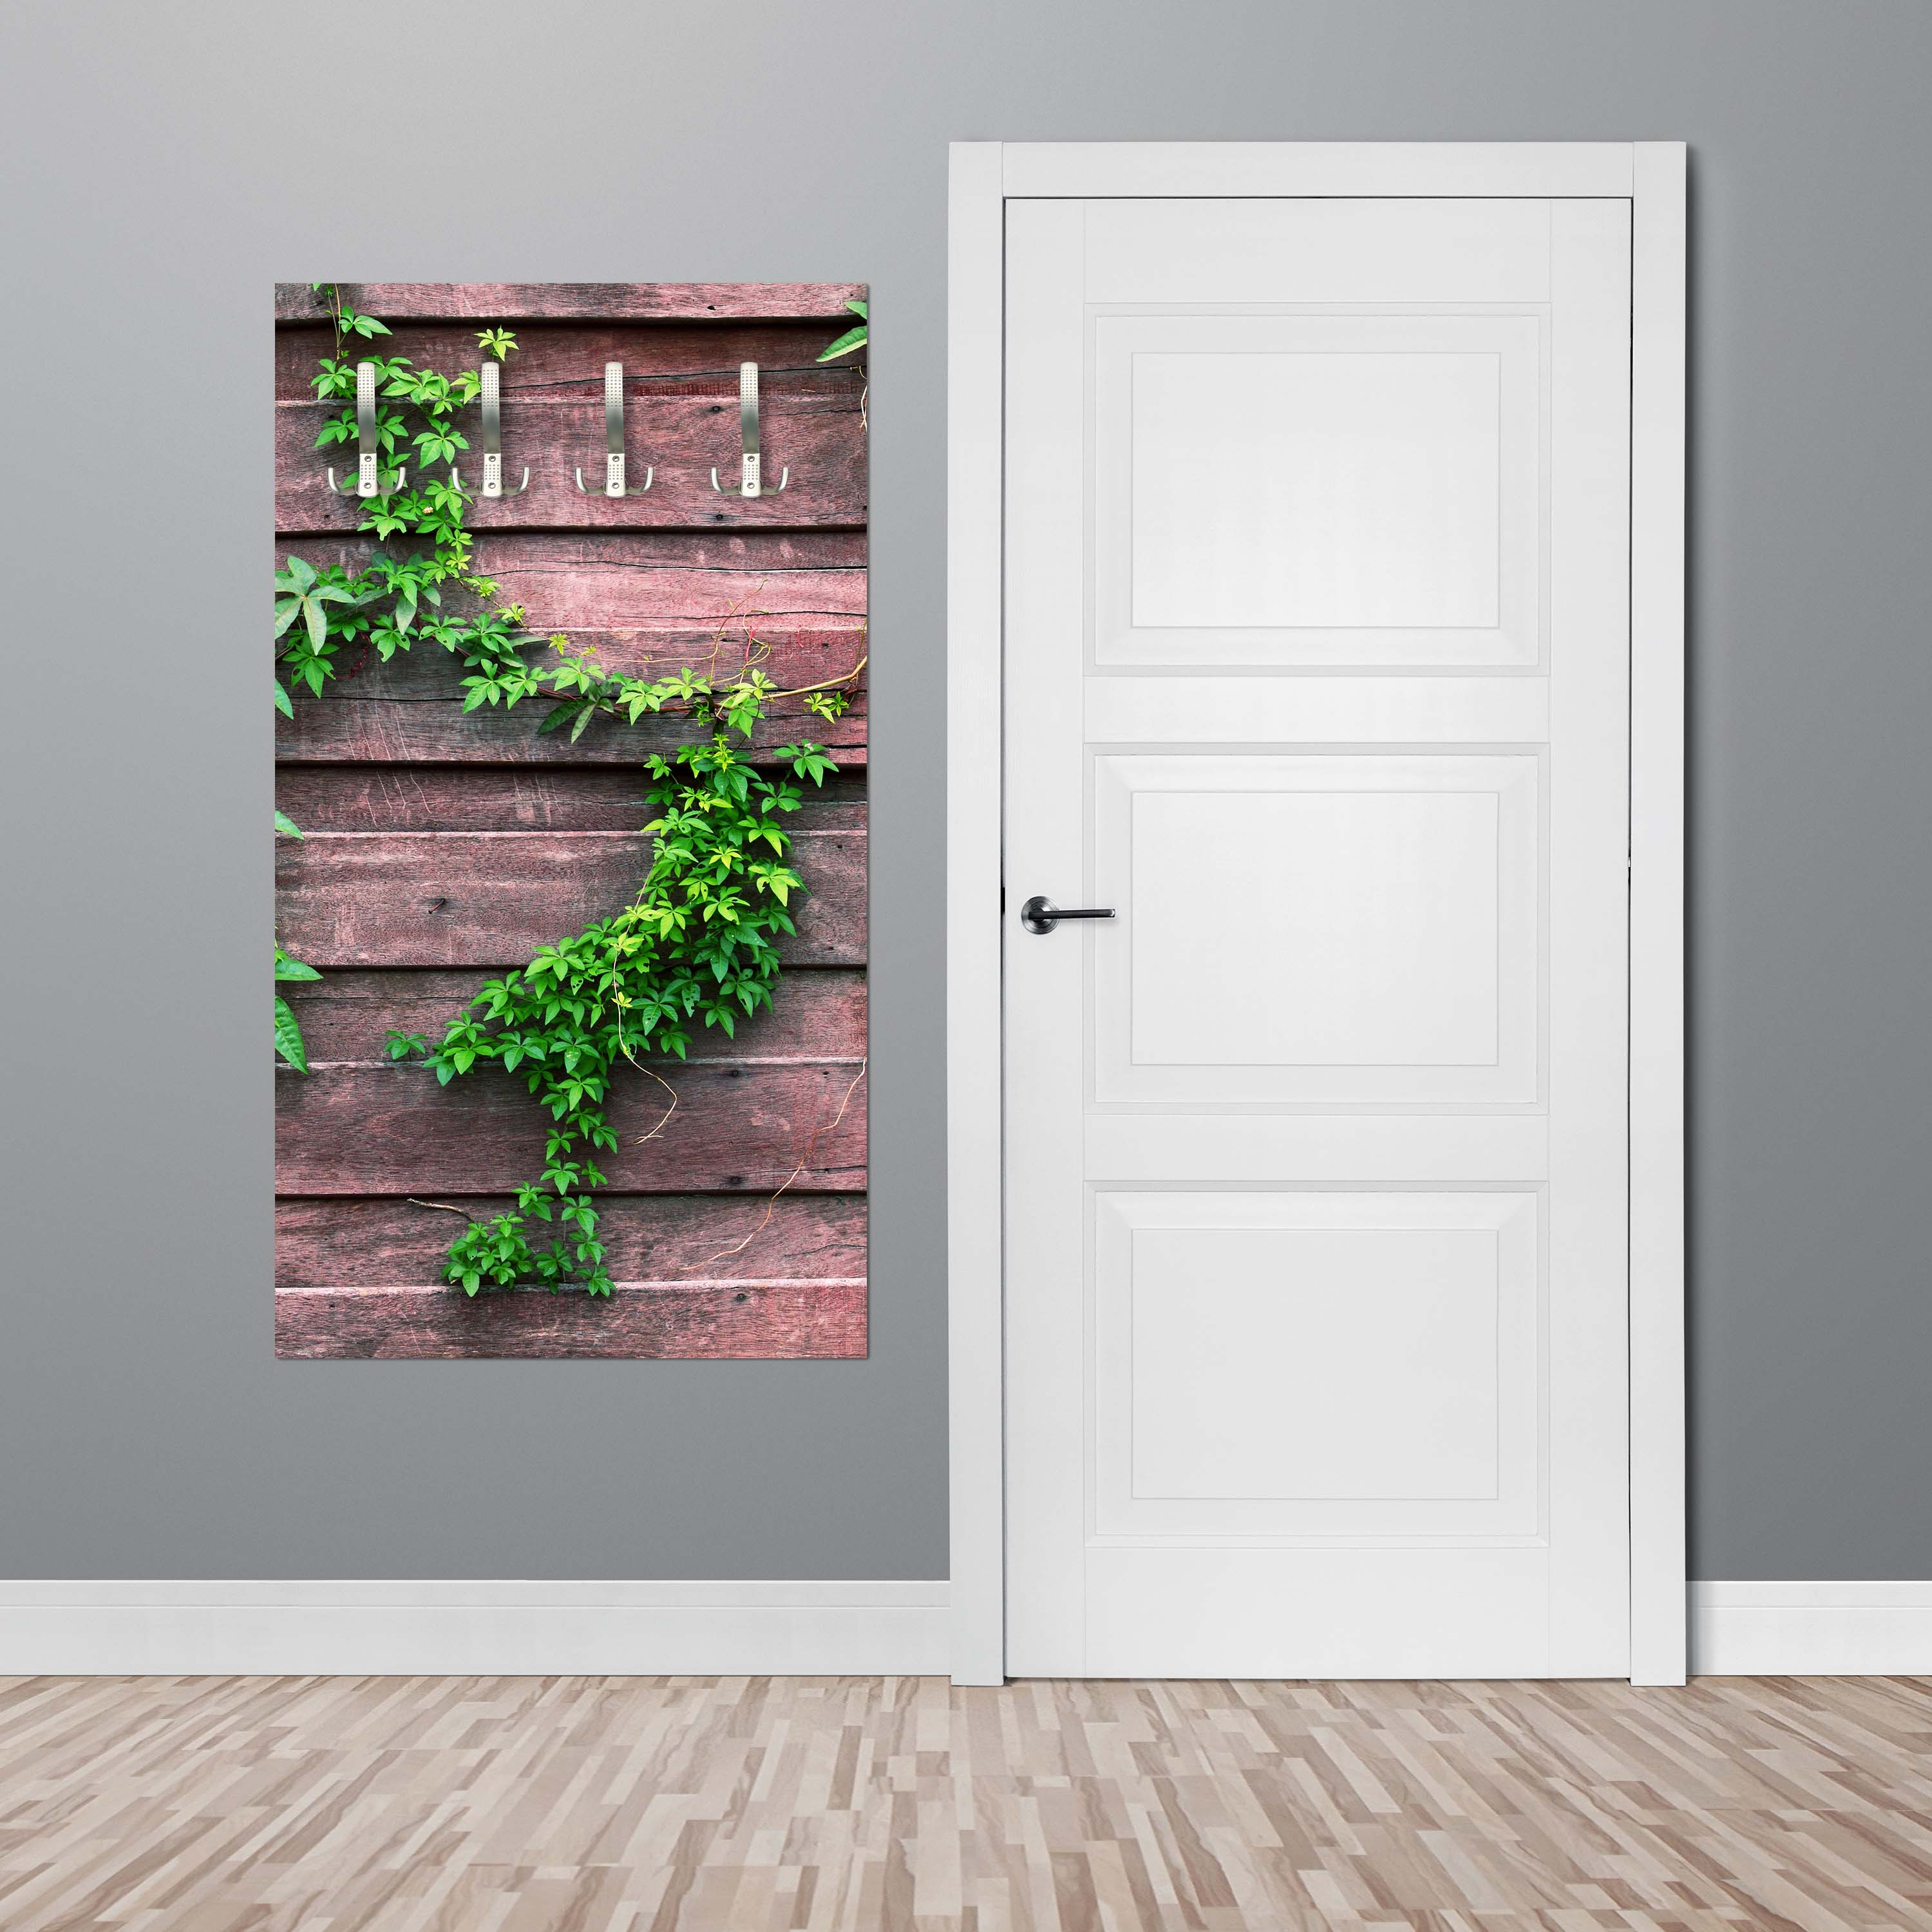 Garderobe Wand mit Kletterpflanze M1004 entdecken - Bild 2